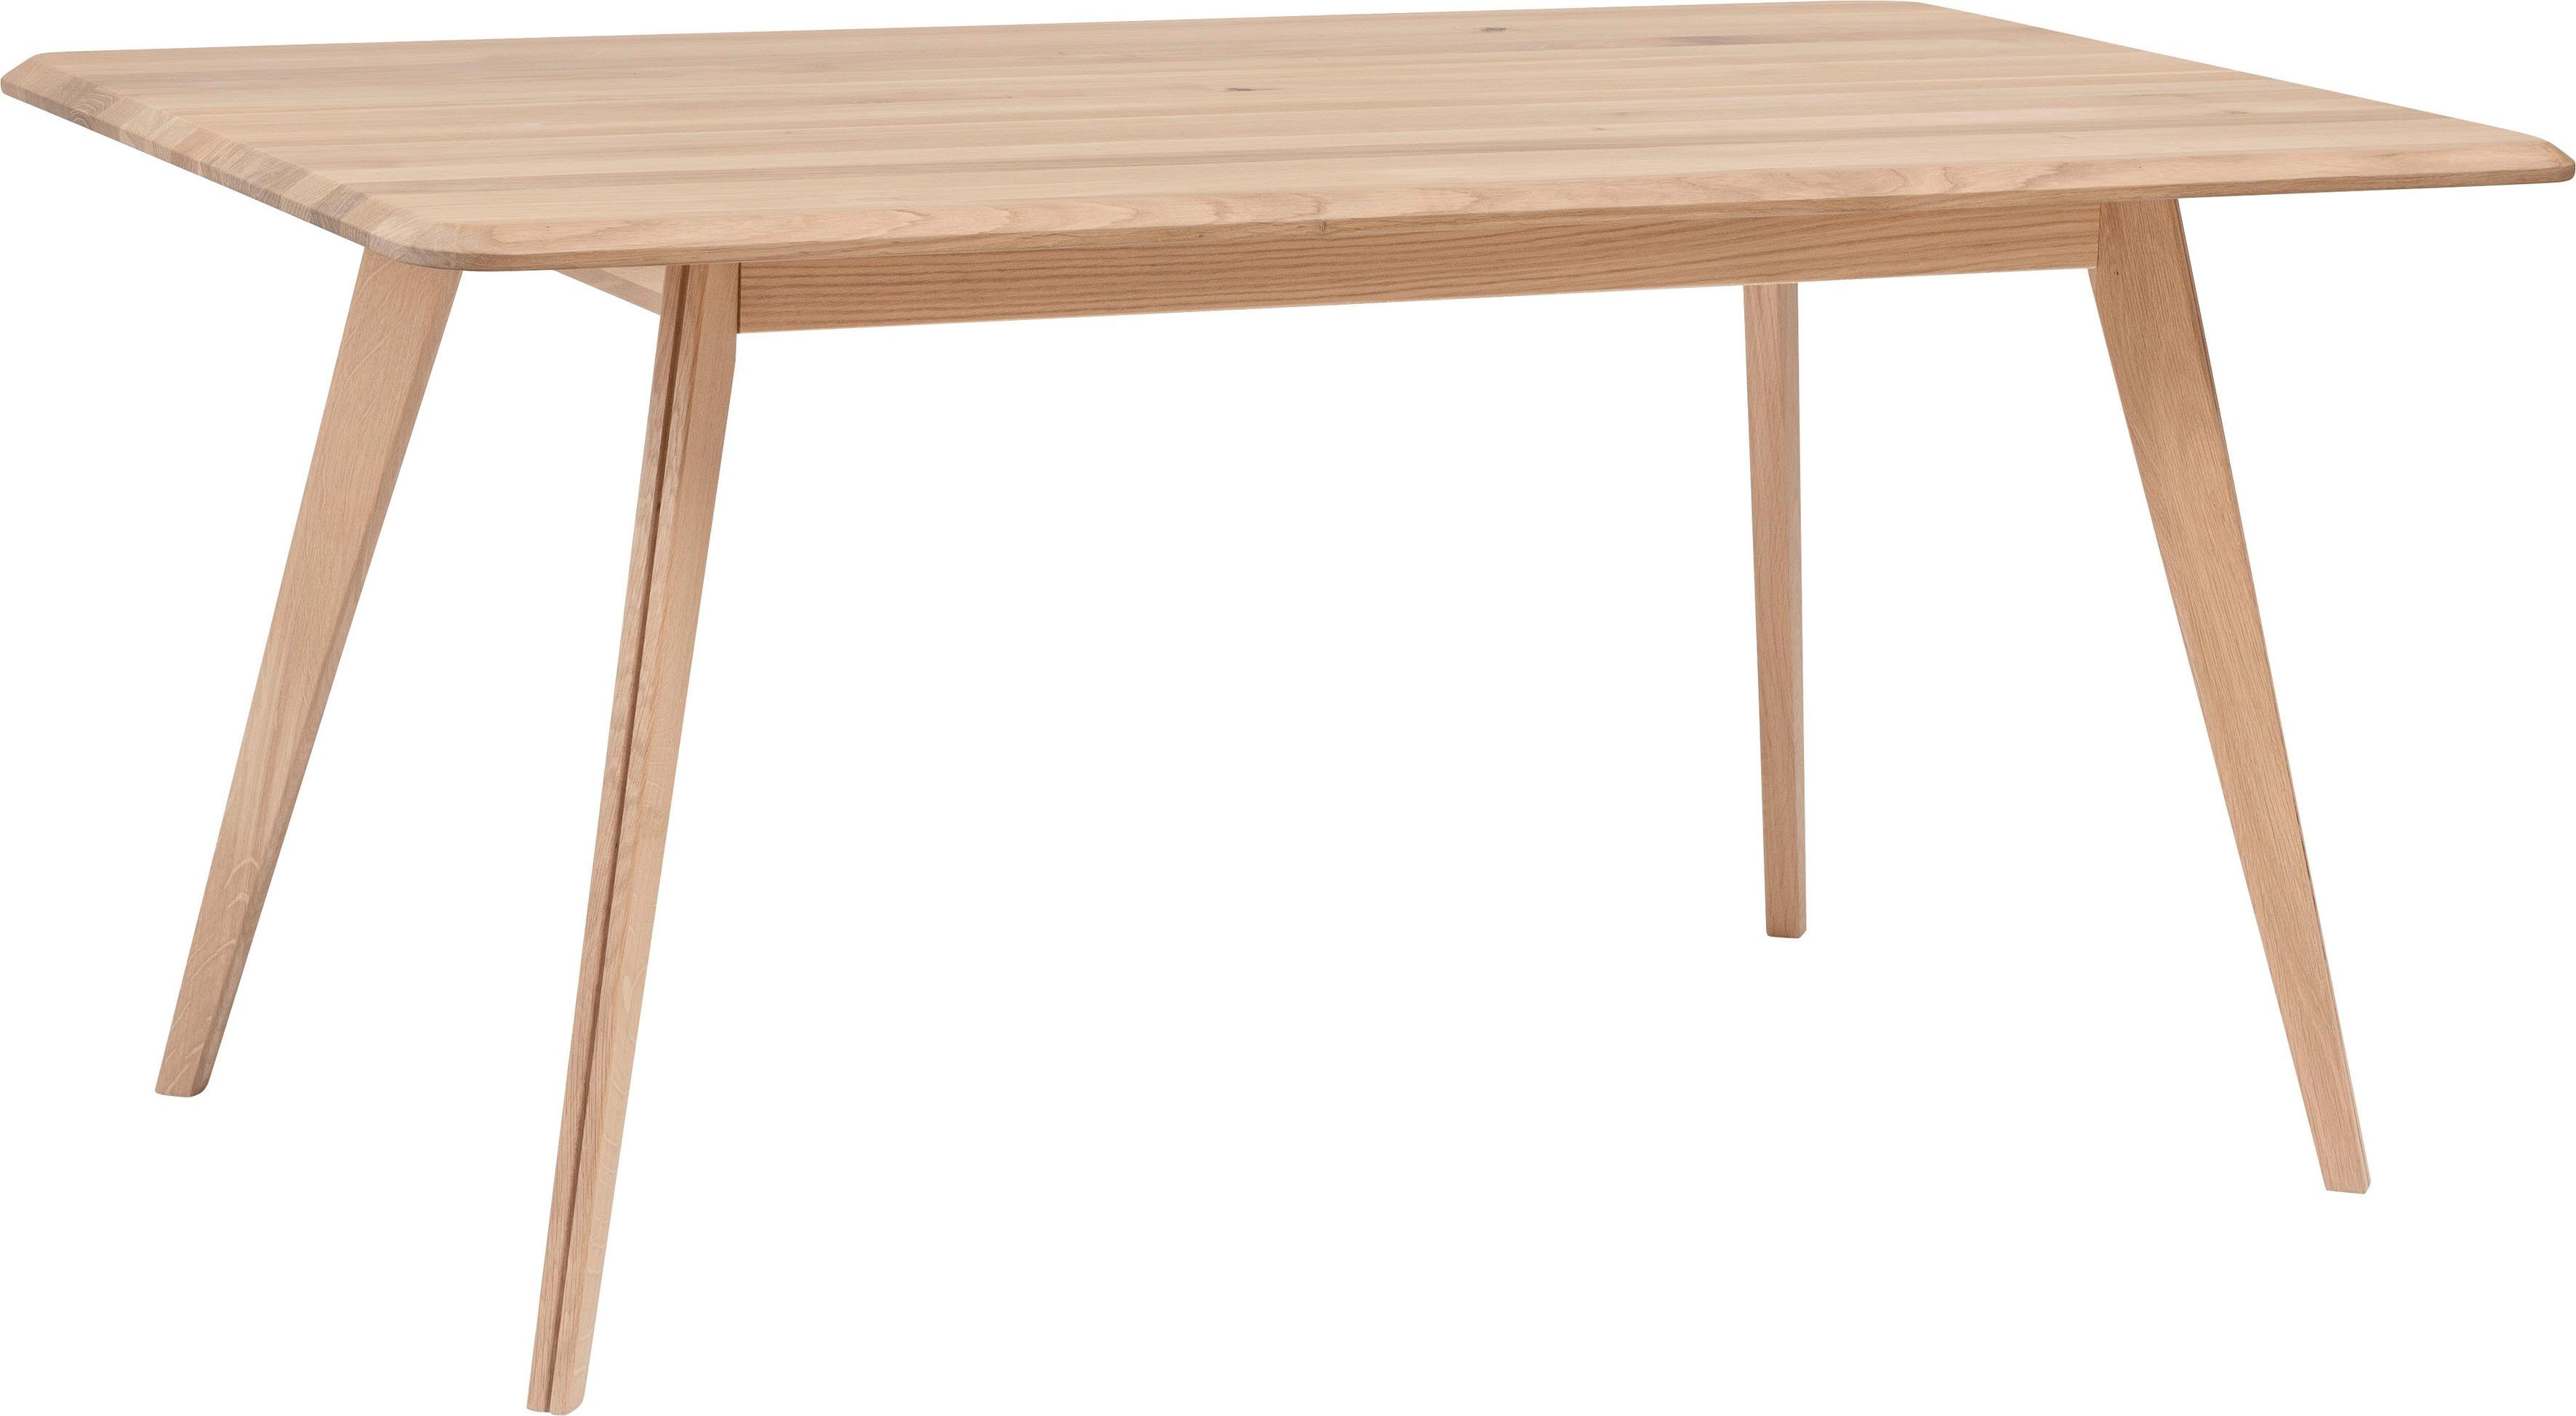 Home affaire Eettafel Infinity van mooi massief hout, design van hoog niveau, in verschillende tafelbreedten te bestellen